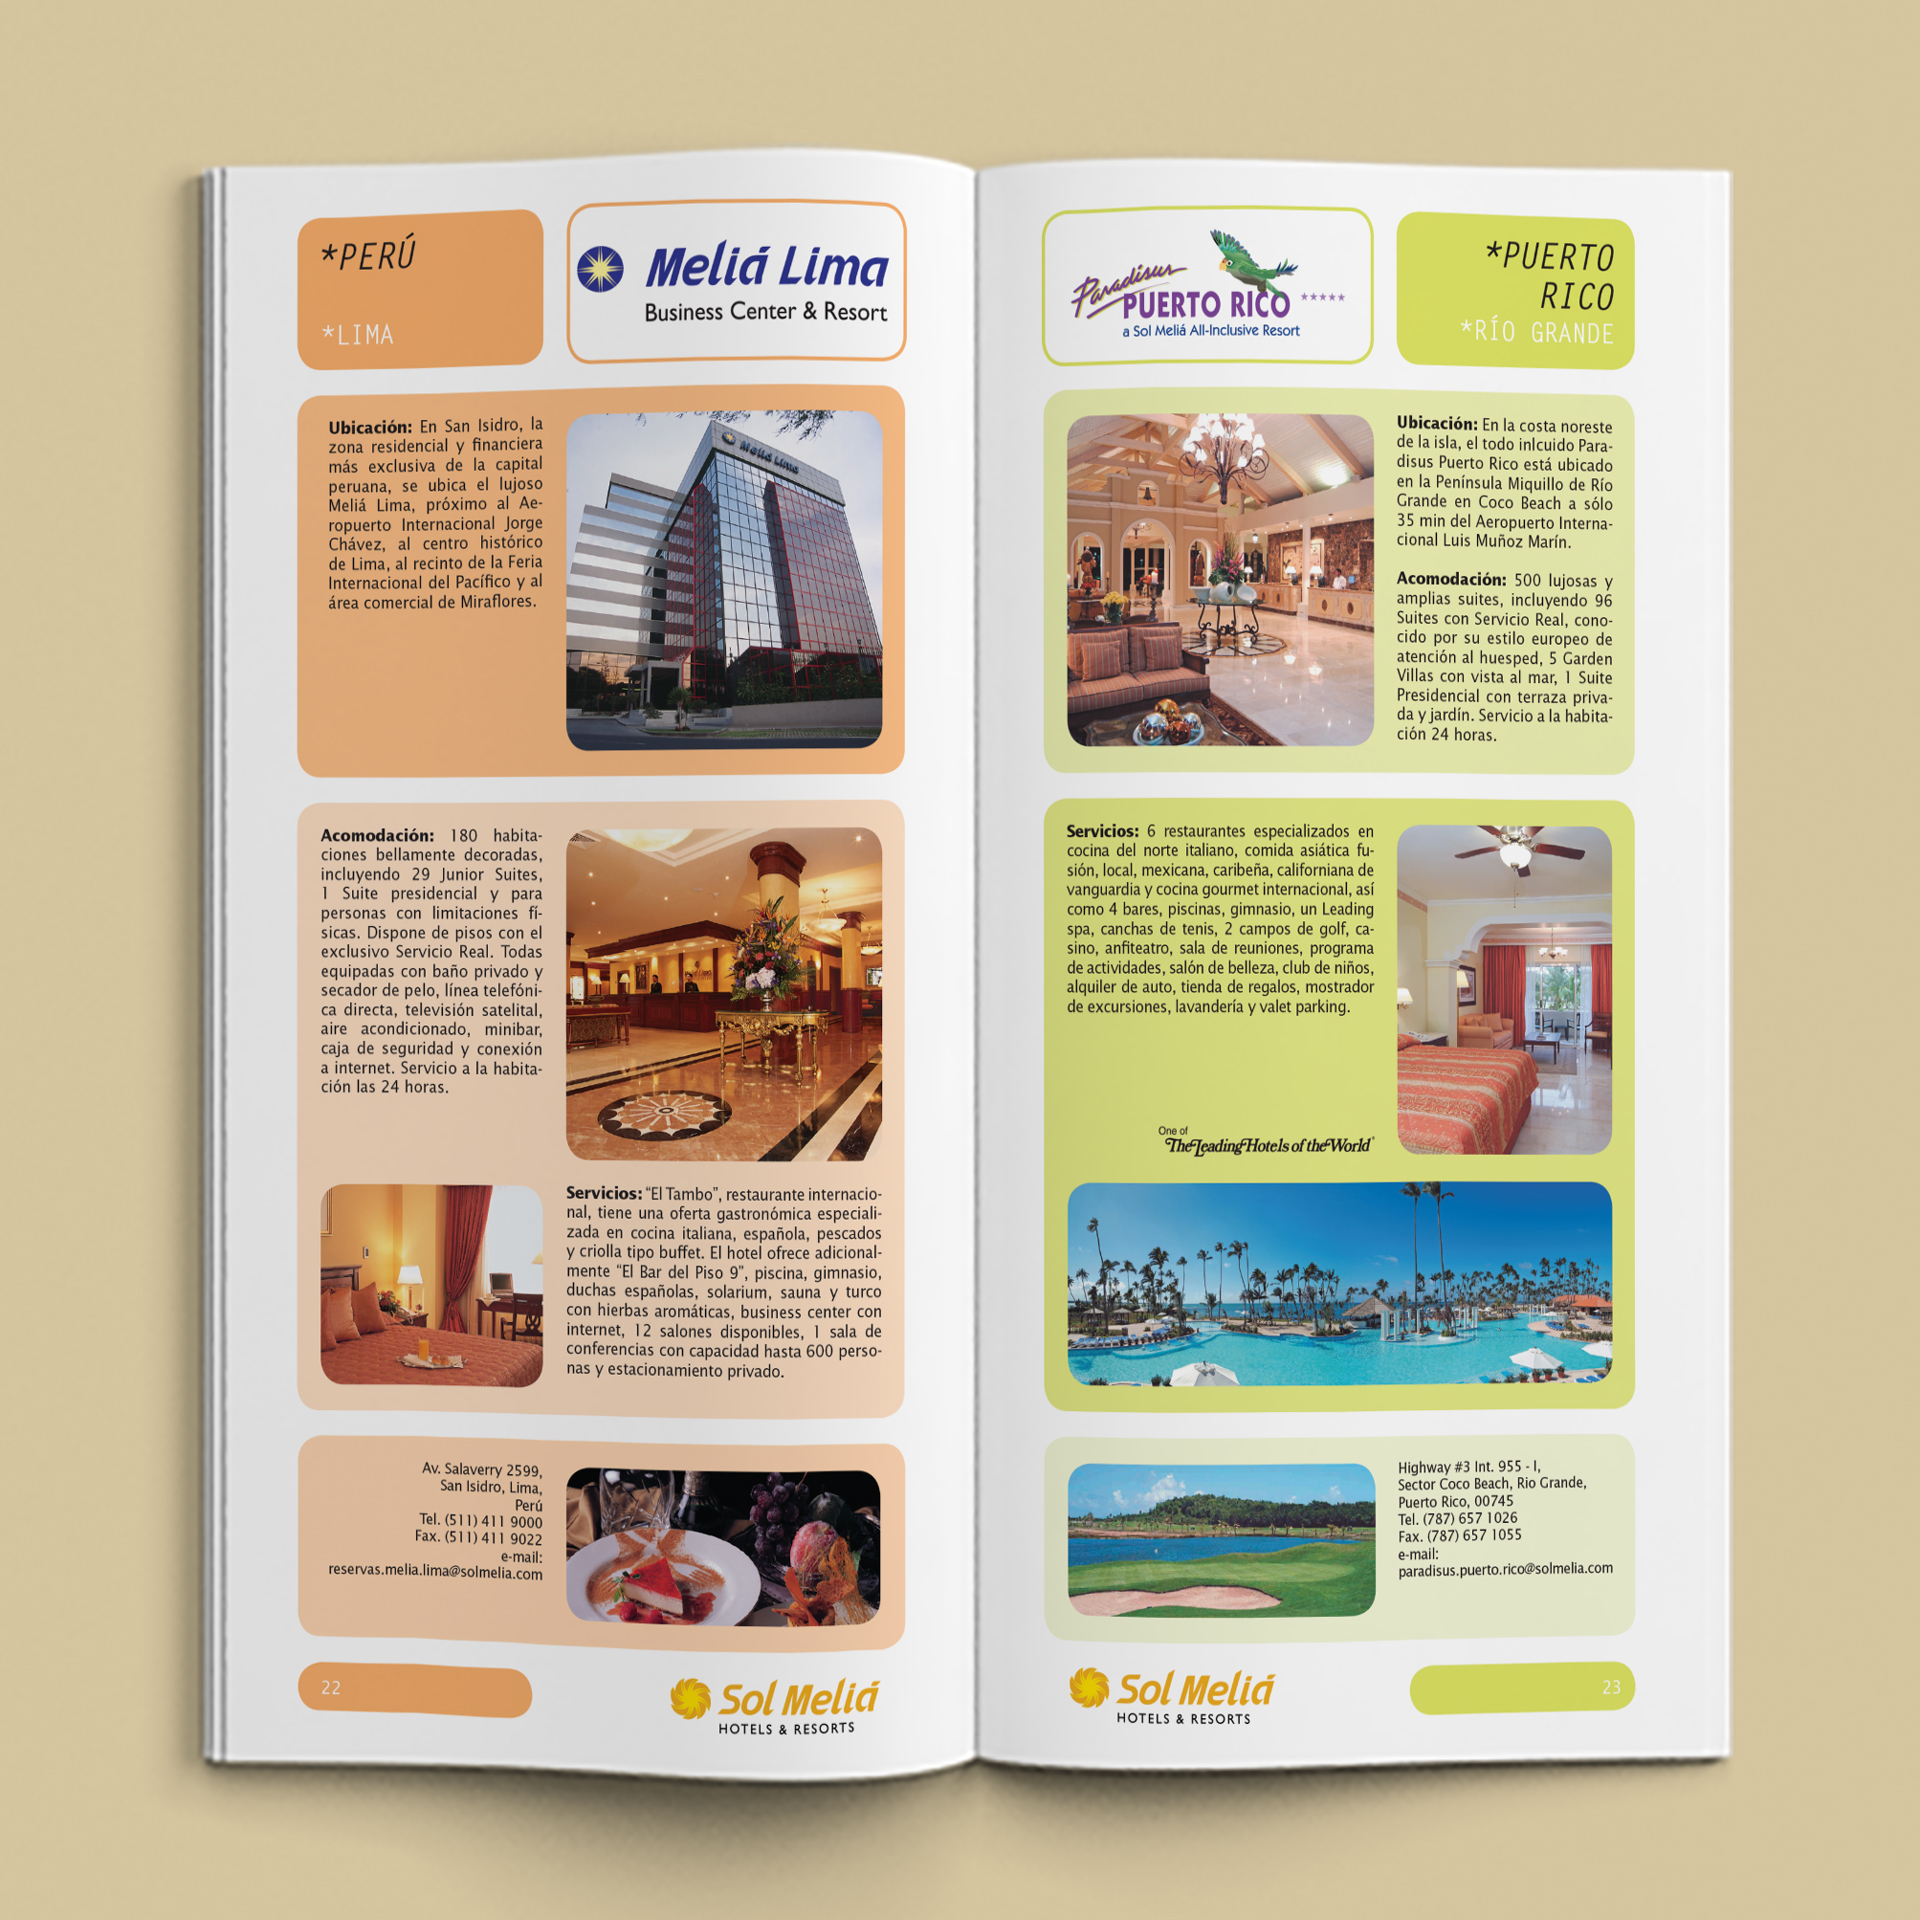 Catálogo de Bolsillo Hoteles & Resorts Sol Meliá - Cielos Abiertos